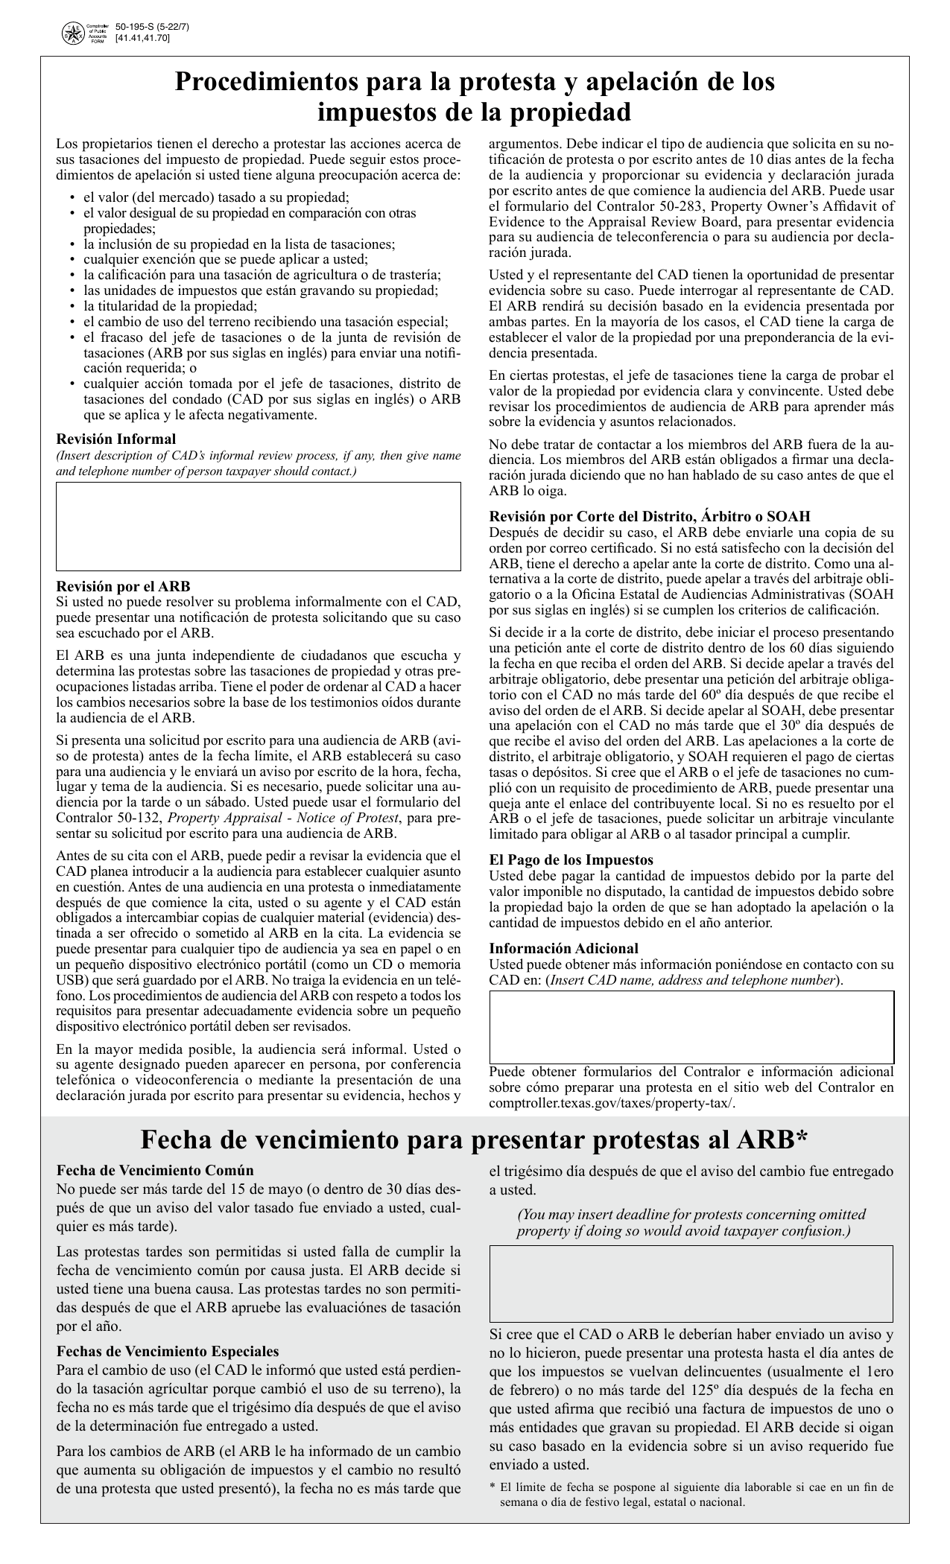 Formulario 50-195-S Procedimientos Para La Protesta Y Apelacion De Los Impuestos De La Propiedad - Texas (Spanish), Page 1